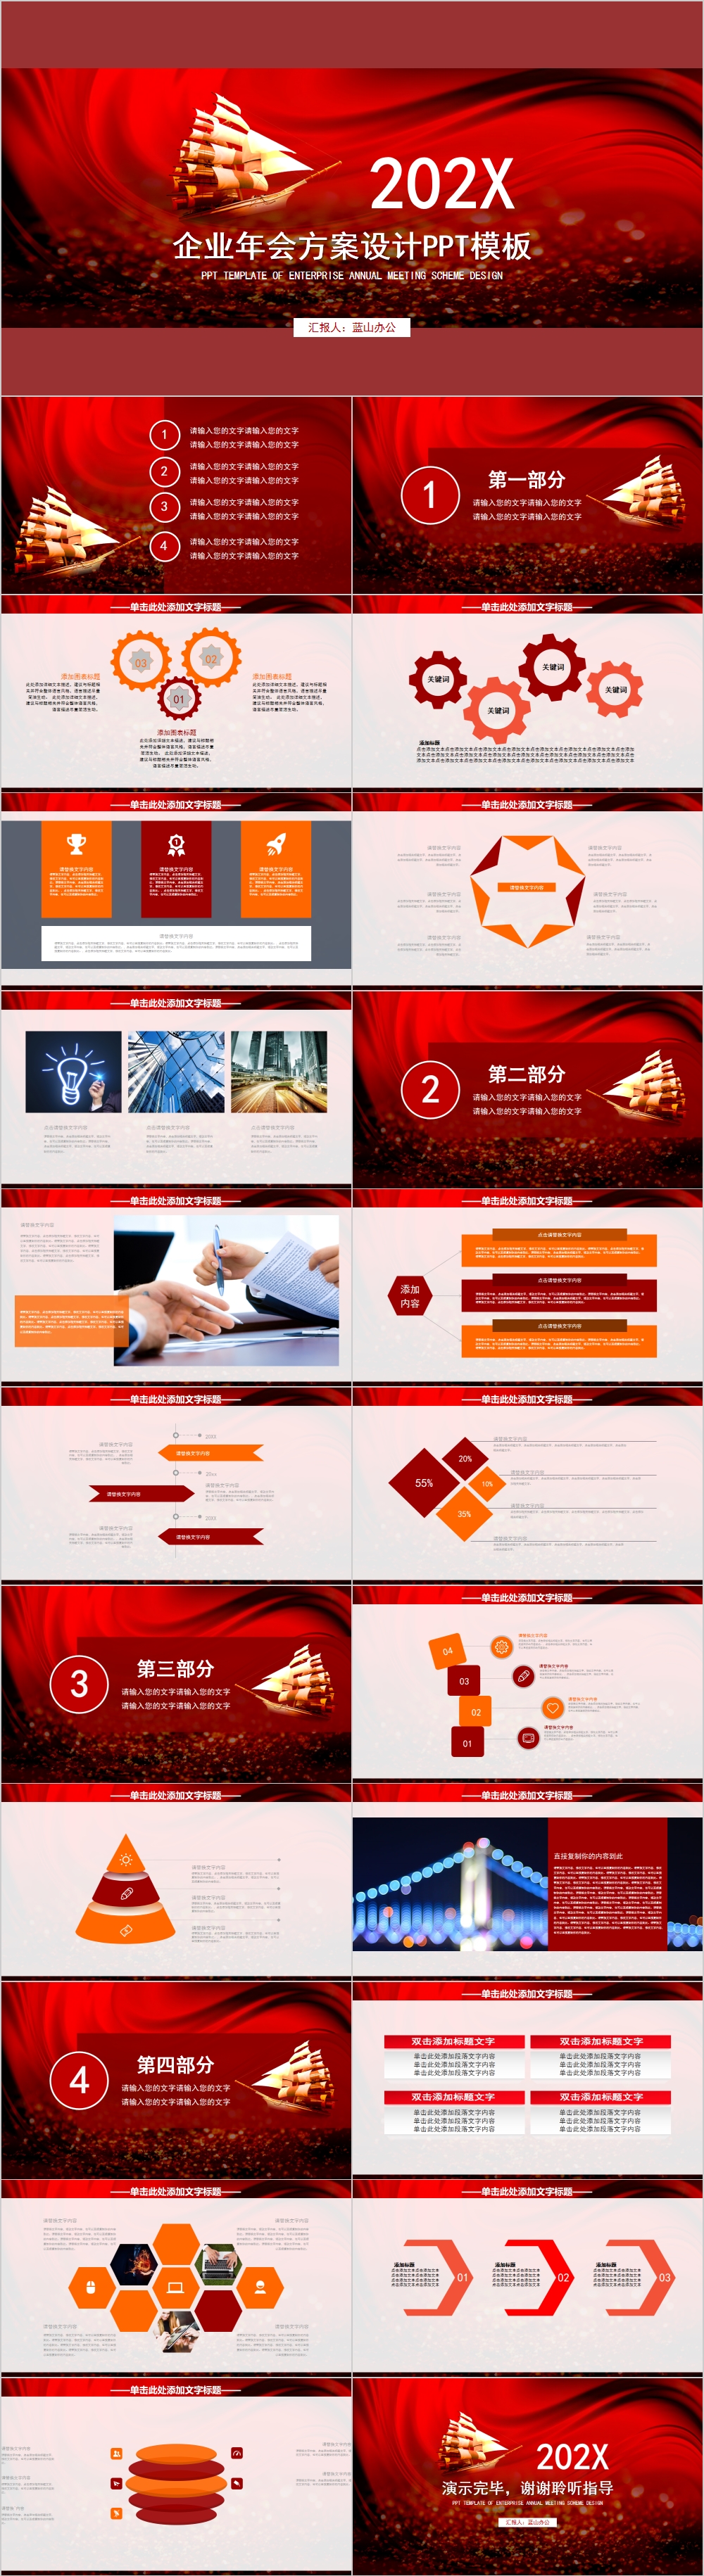 红色丝绸背景企业年会方案设计PPT模板